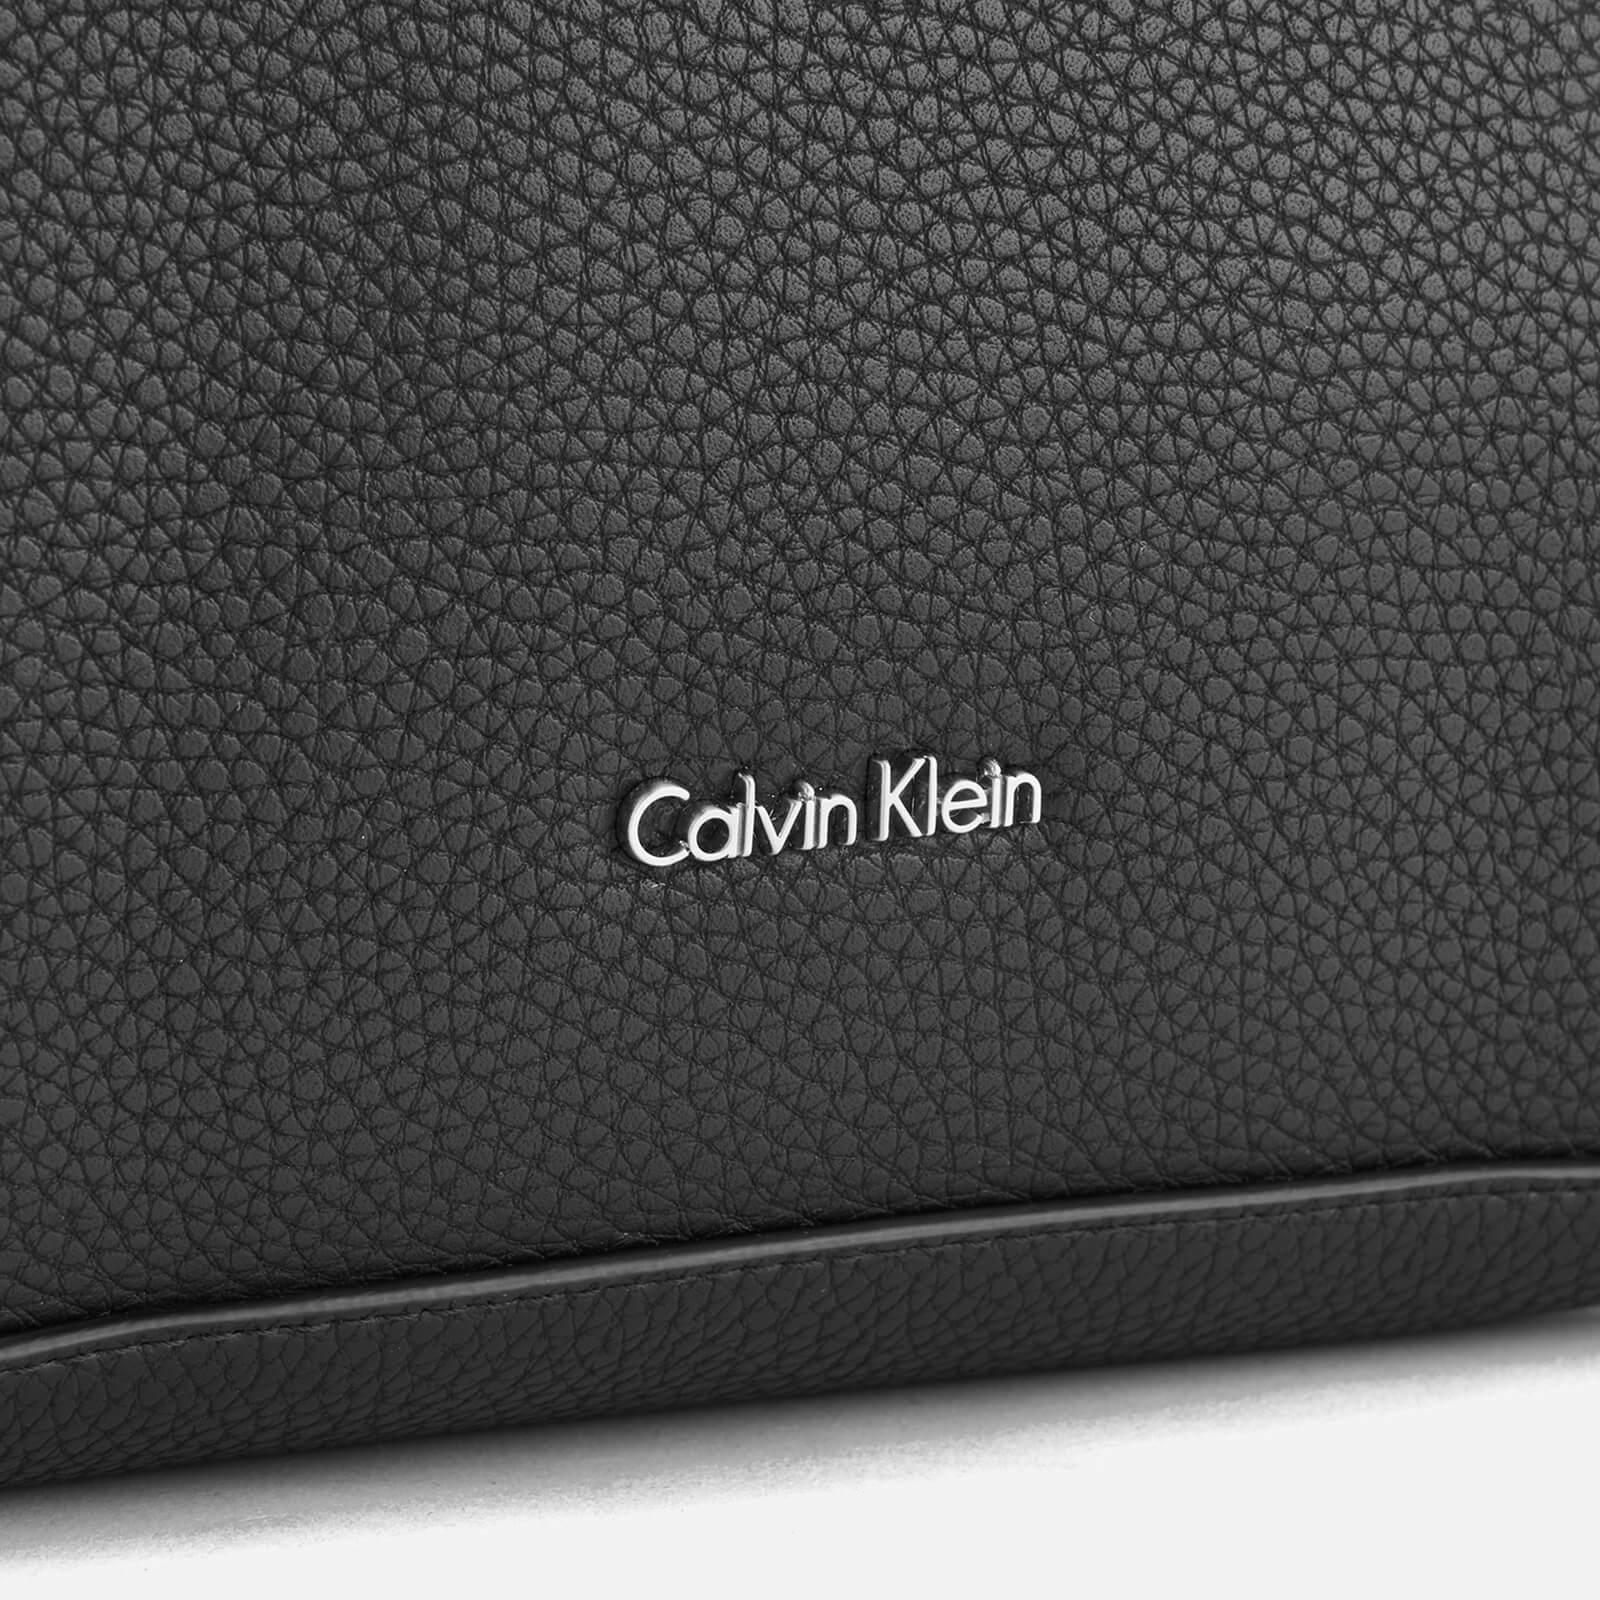 CALVIN KLEIN 205W39NYC Edit Medium Shopper Bag in Black - Lyst